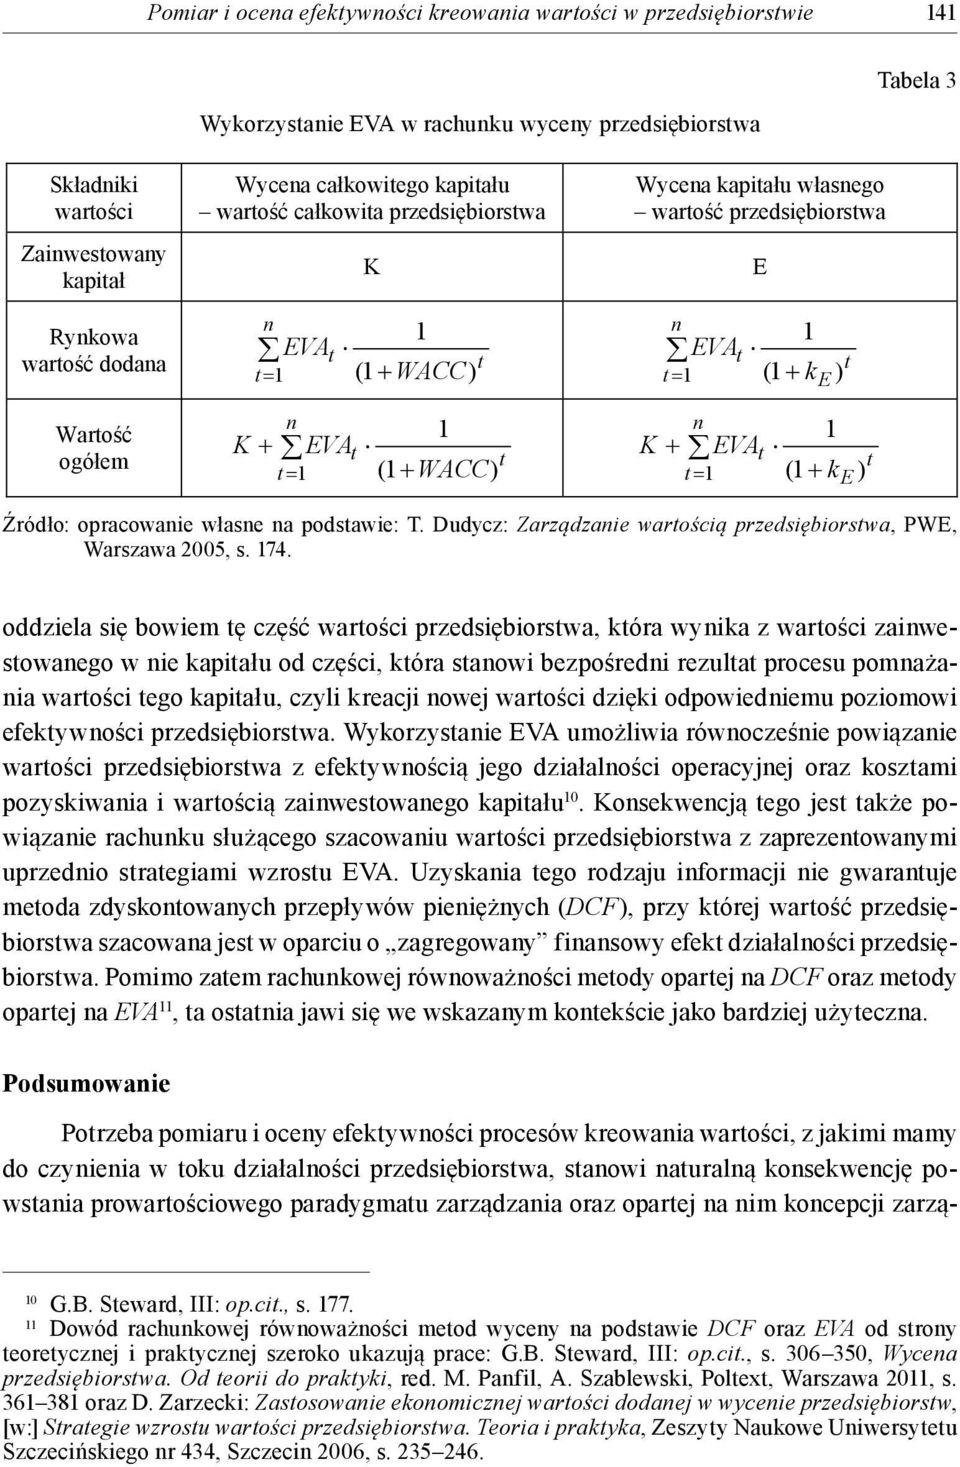 Dudycz: Zarządzaie warością przedsiębiorswa, PWE, Warszawa 2005, s. 74.